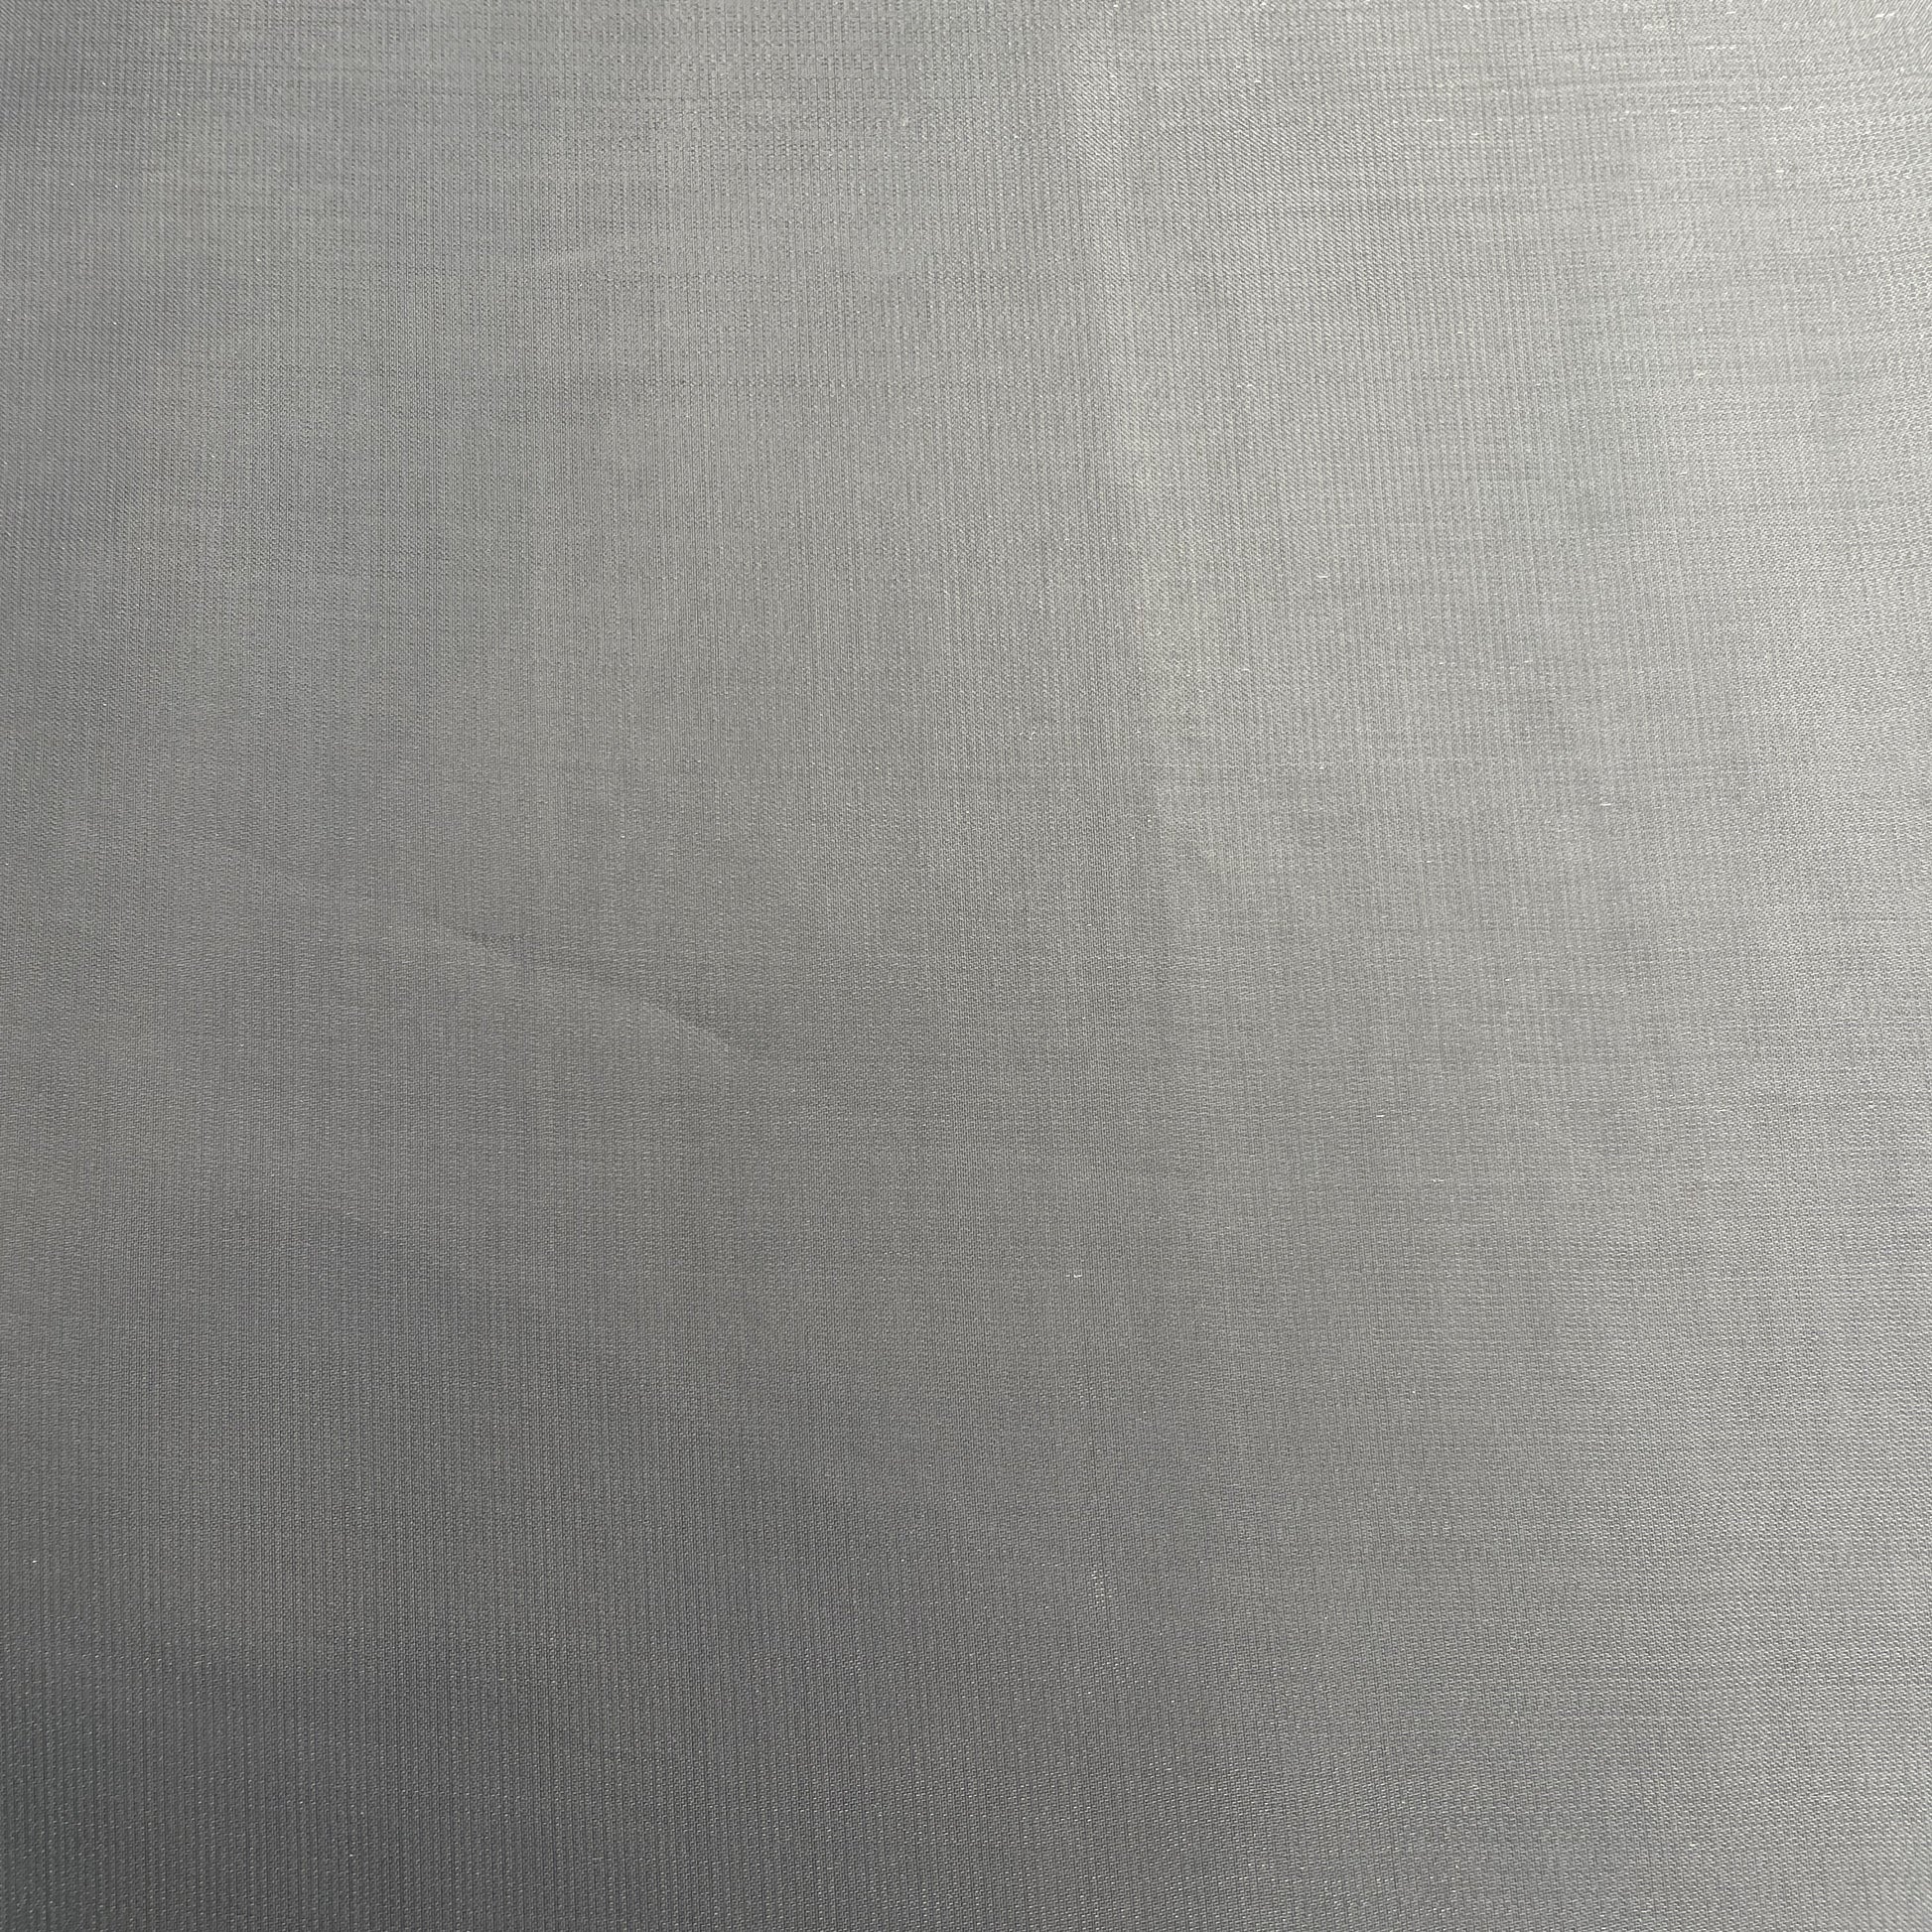 Premium Silver Solid Organza Satin Fabric